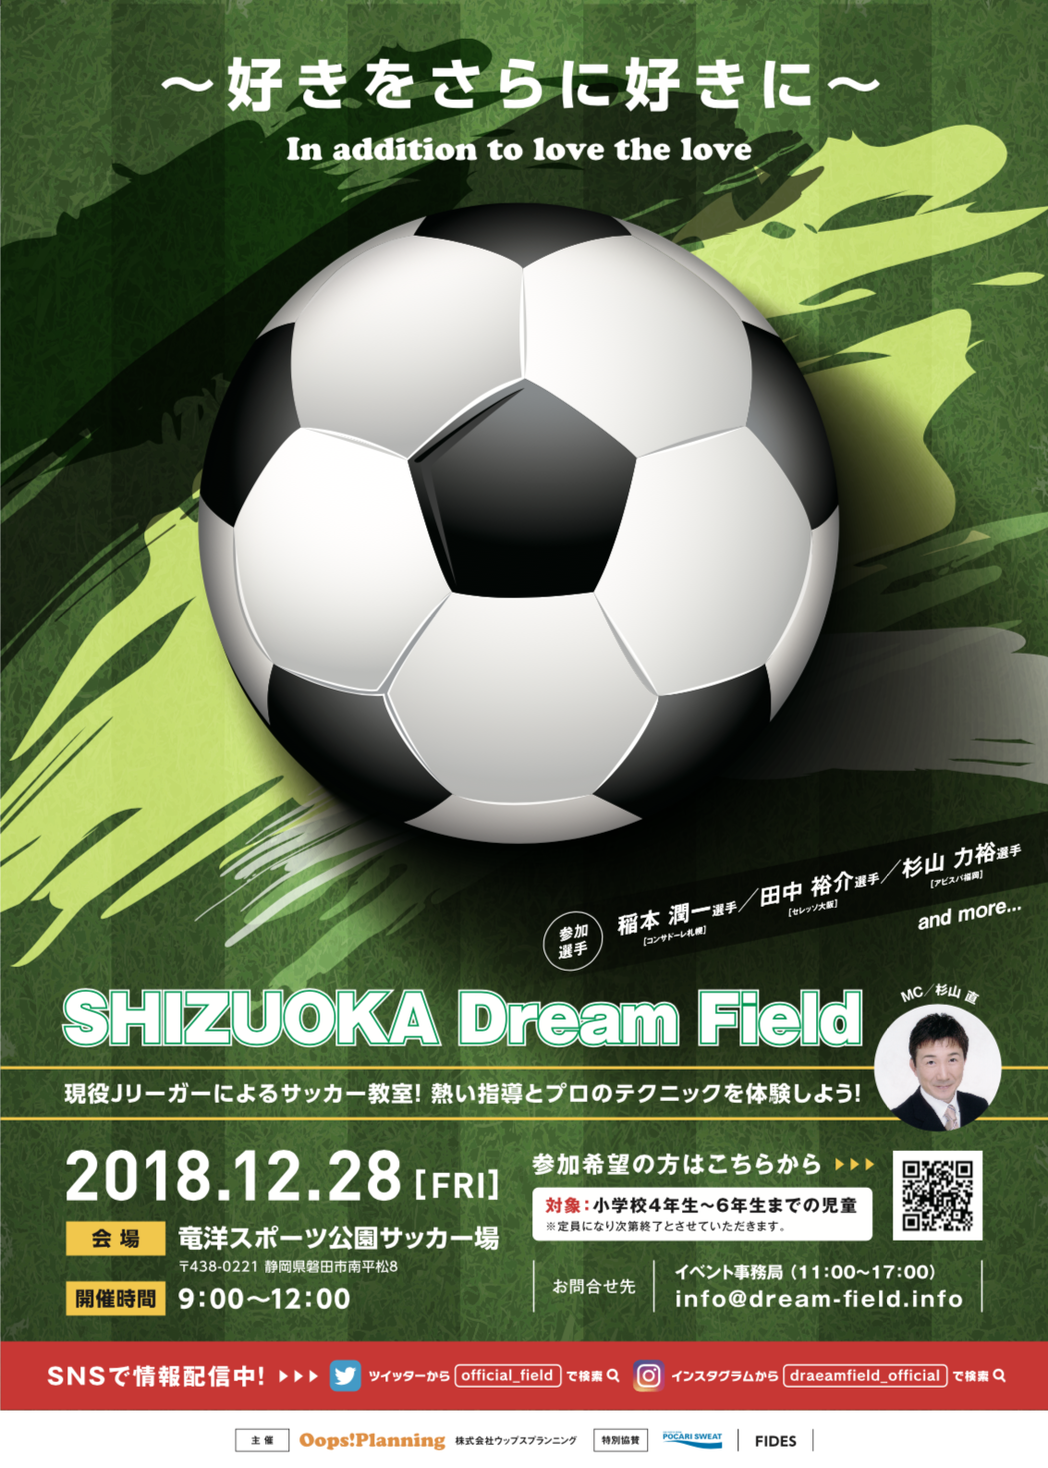 憧れのjリーガーと一緒にプレーしよう Shizuoka Dream Field 18 を12月28日に竜洋スポーツ公園にて開催 株式会社ウップスプランニングのプレスリリース